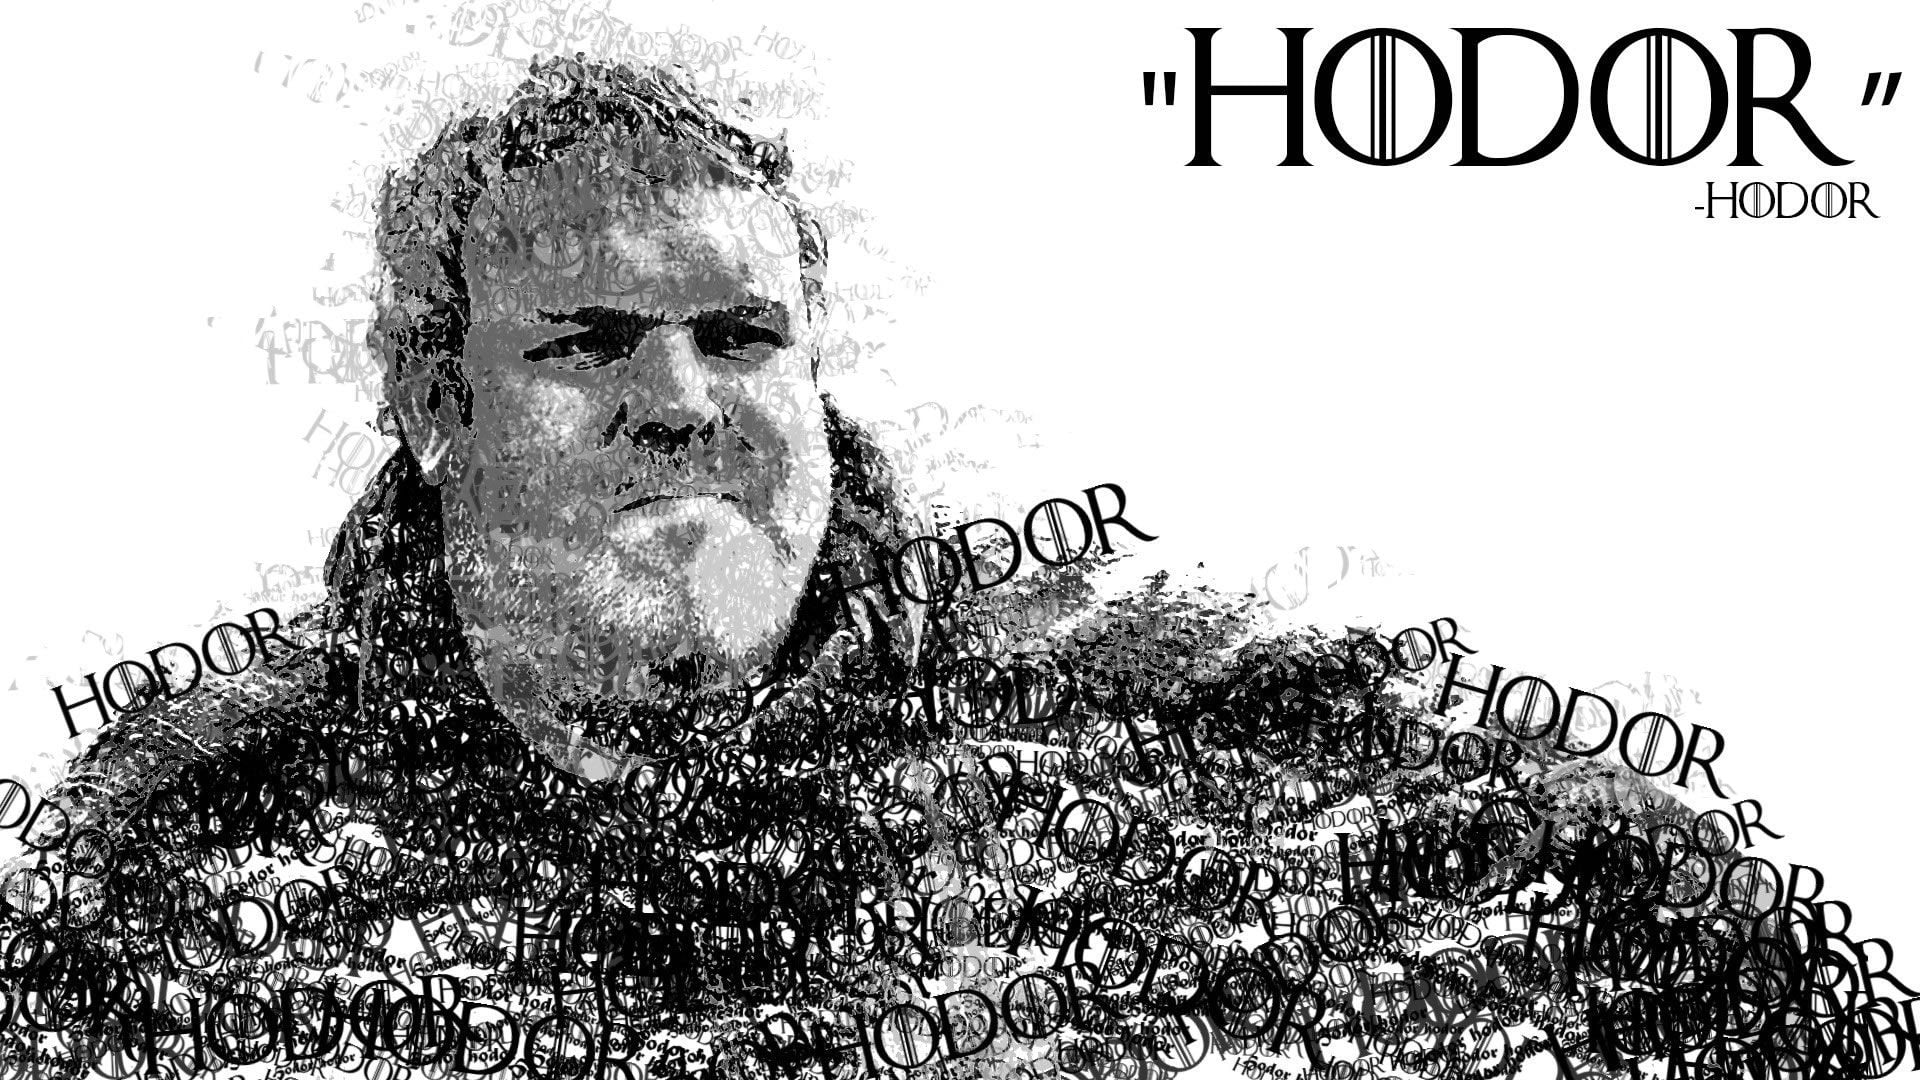 Game of Thrones Hodor in words